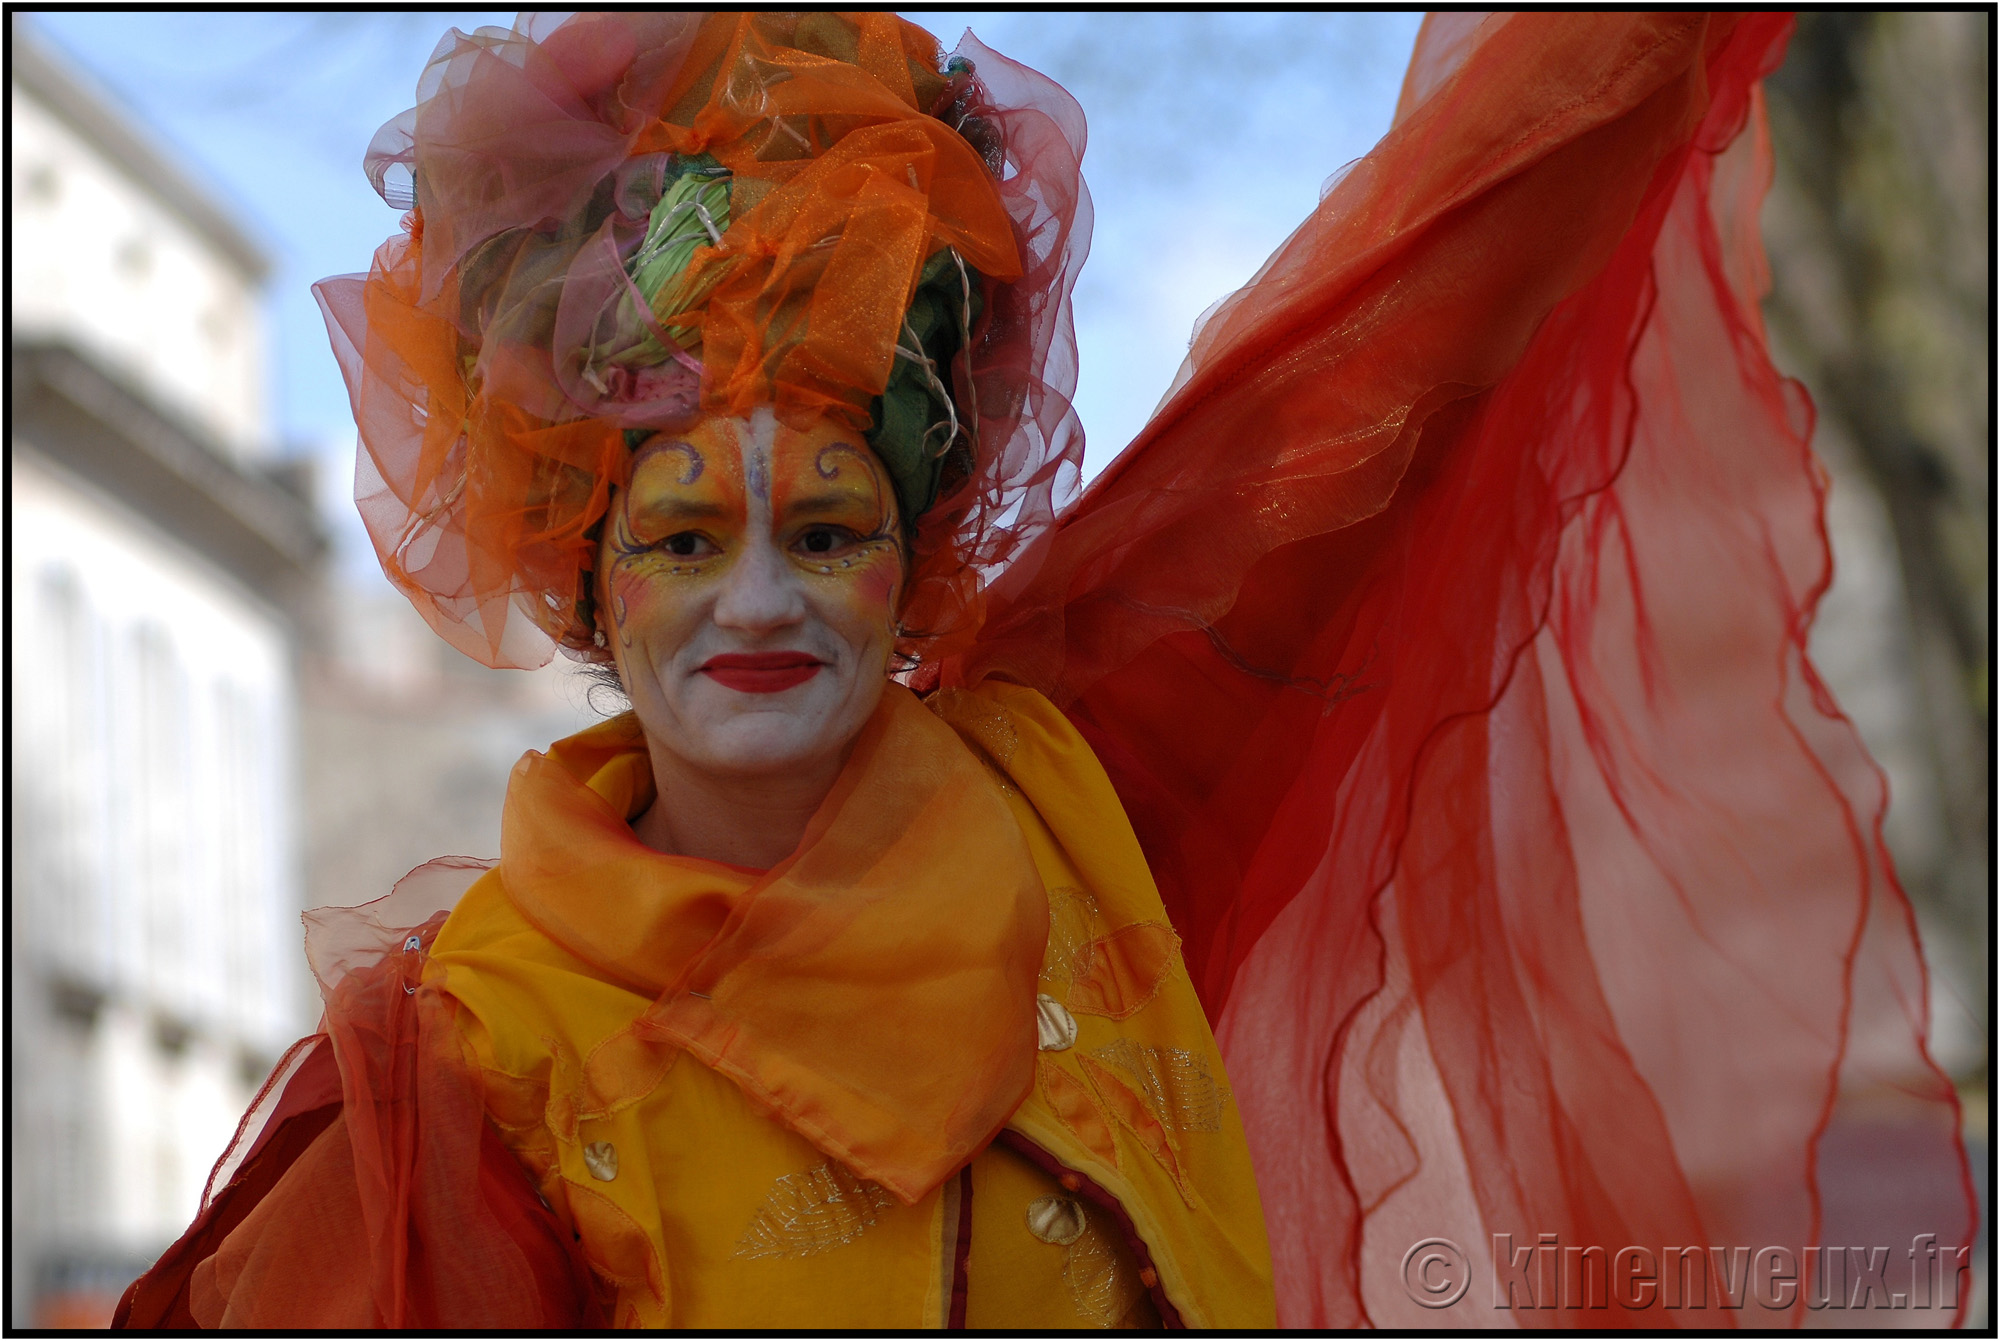 kinenveux_67_carnaval2015lr.jpg - Carnaval des Enfants 2015 - La Rochelle